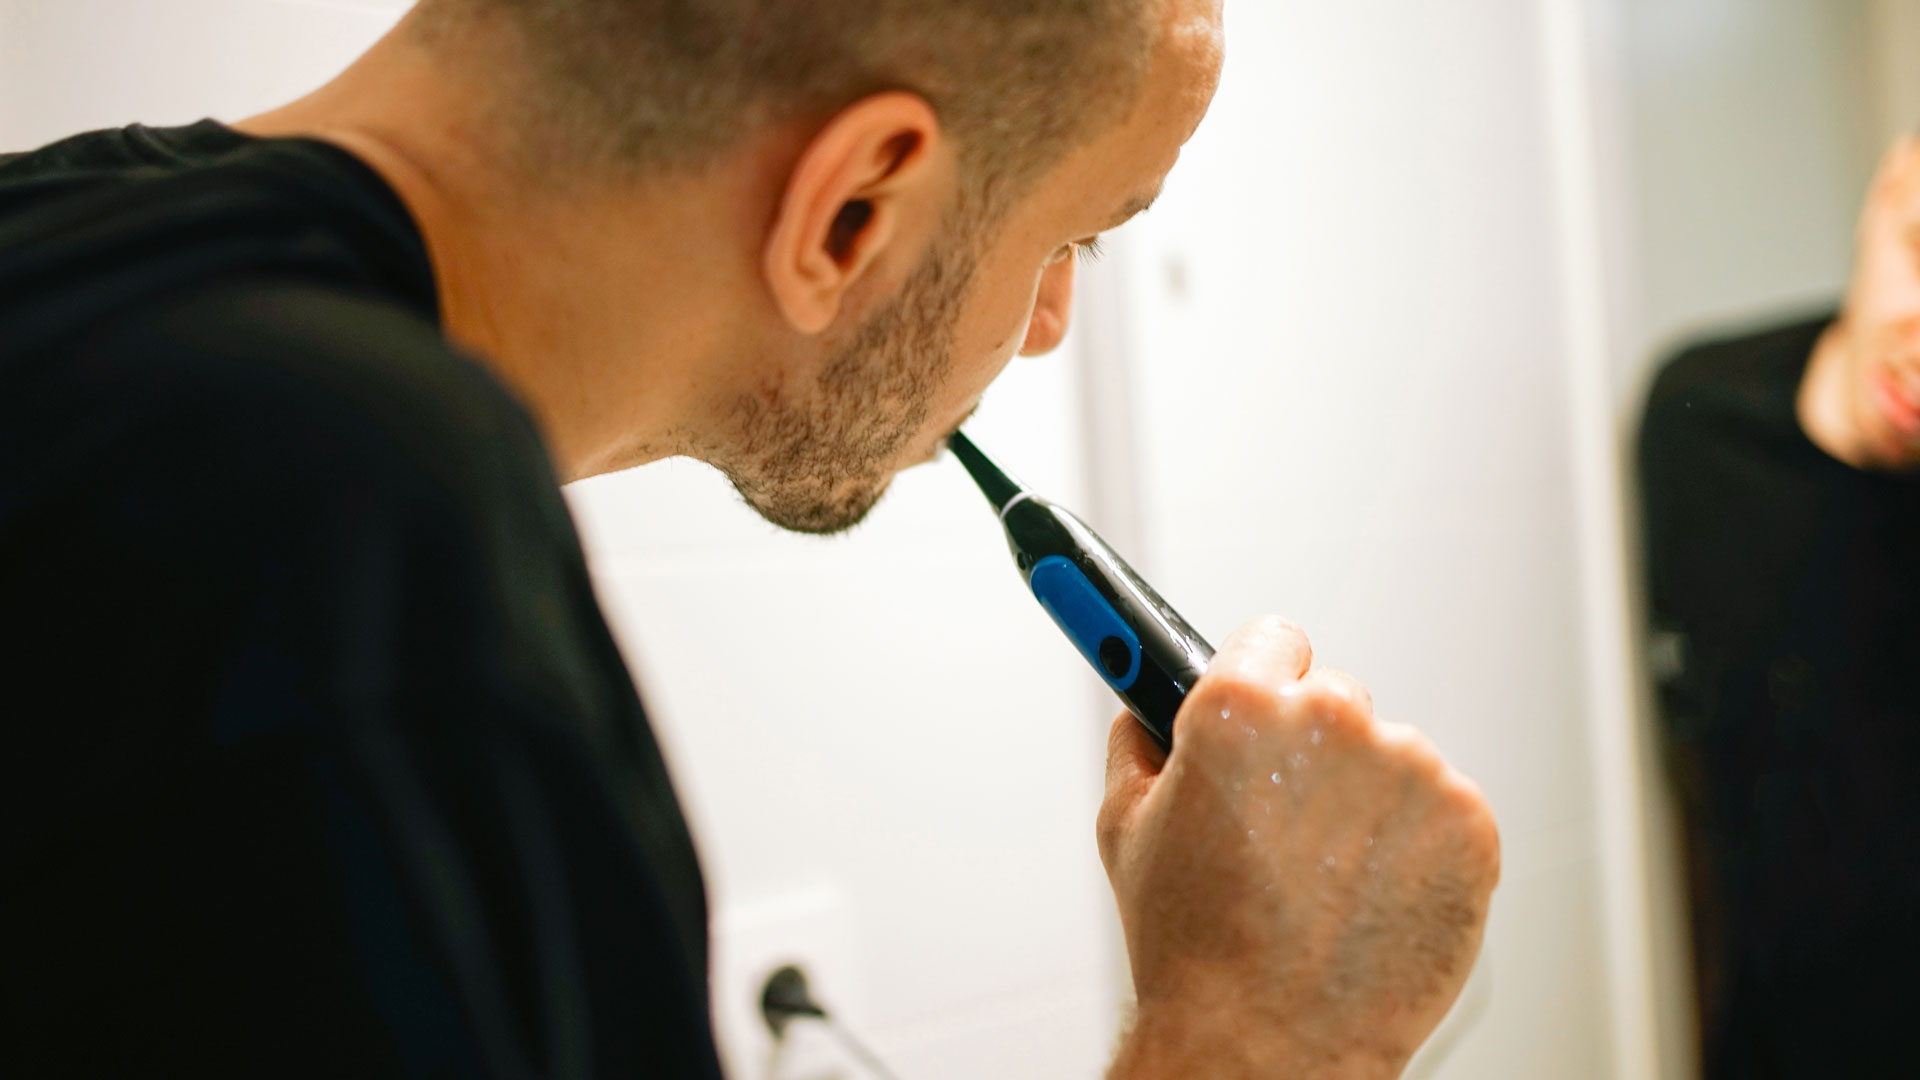 L'image montre un homme se brosser les dents dans un miroir